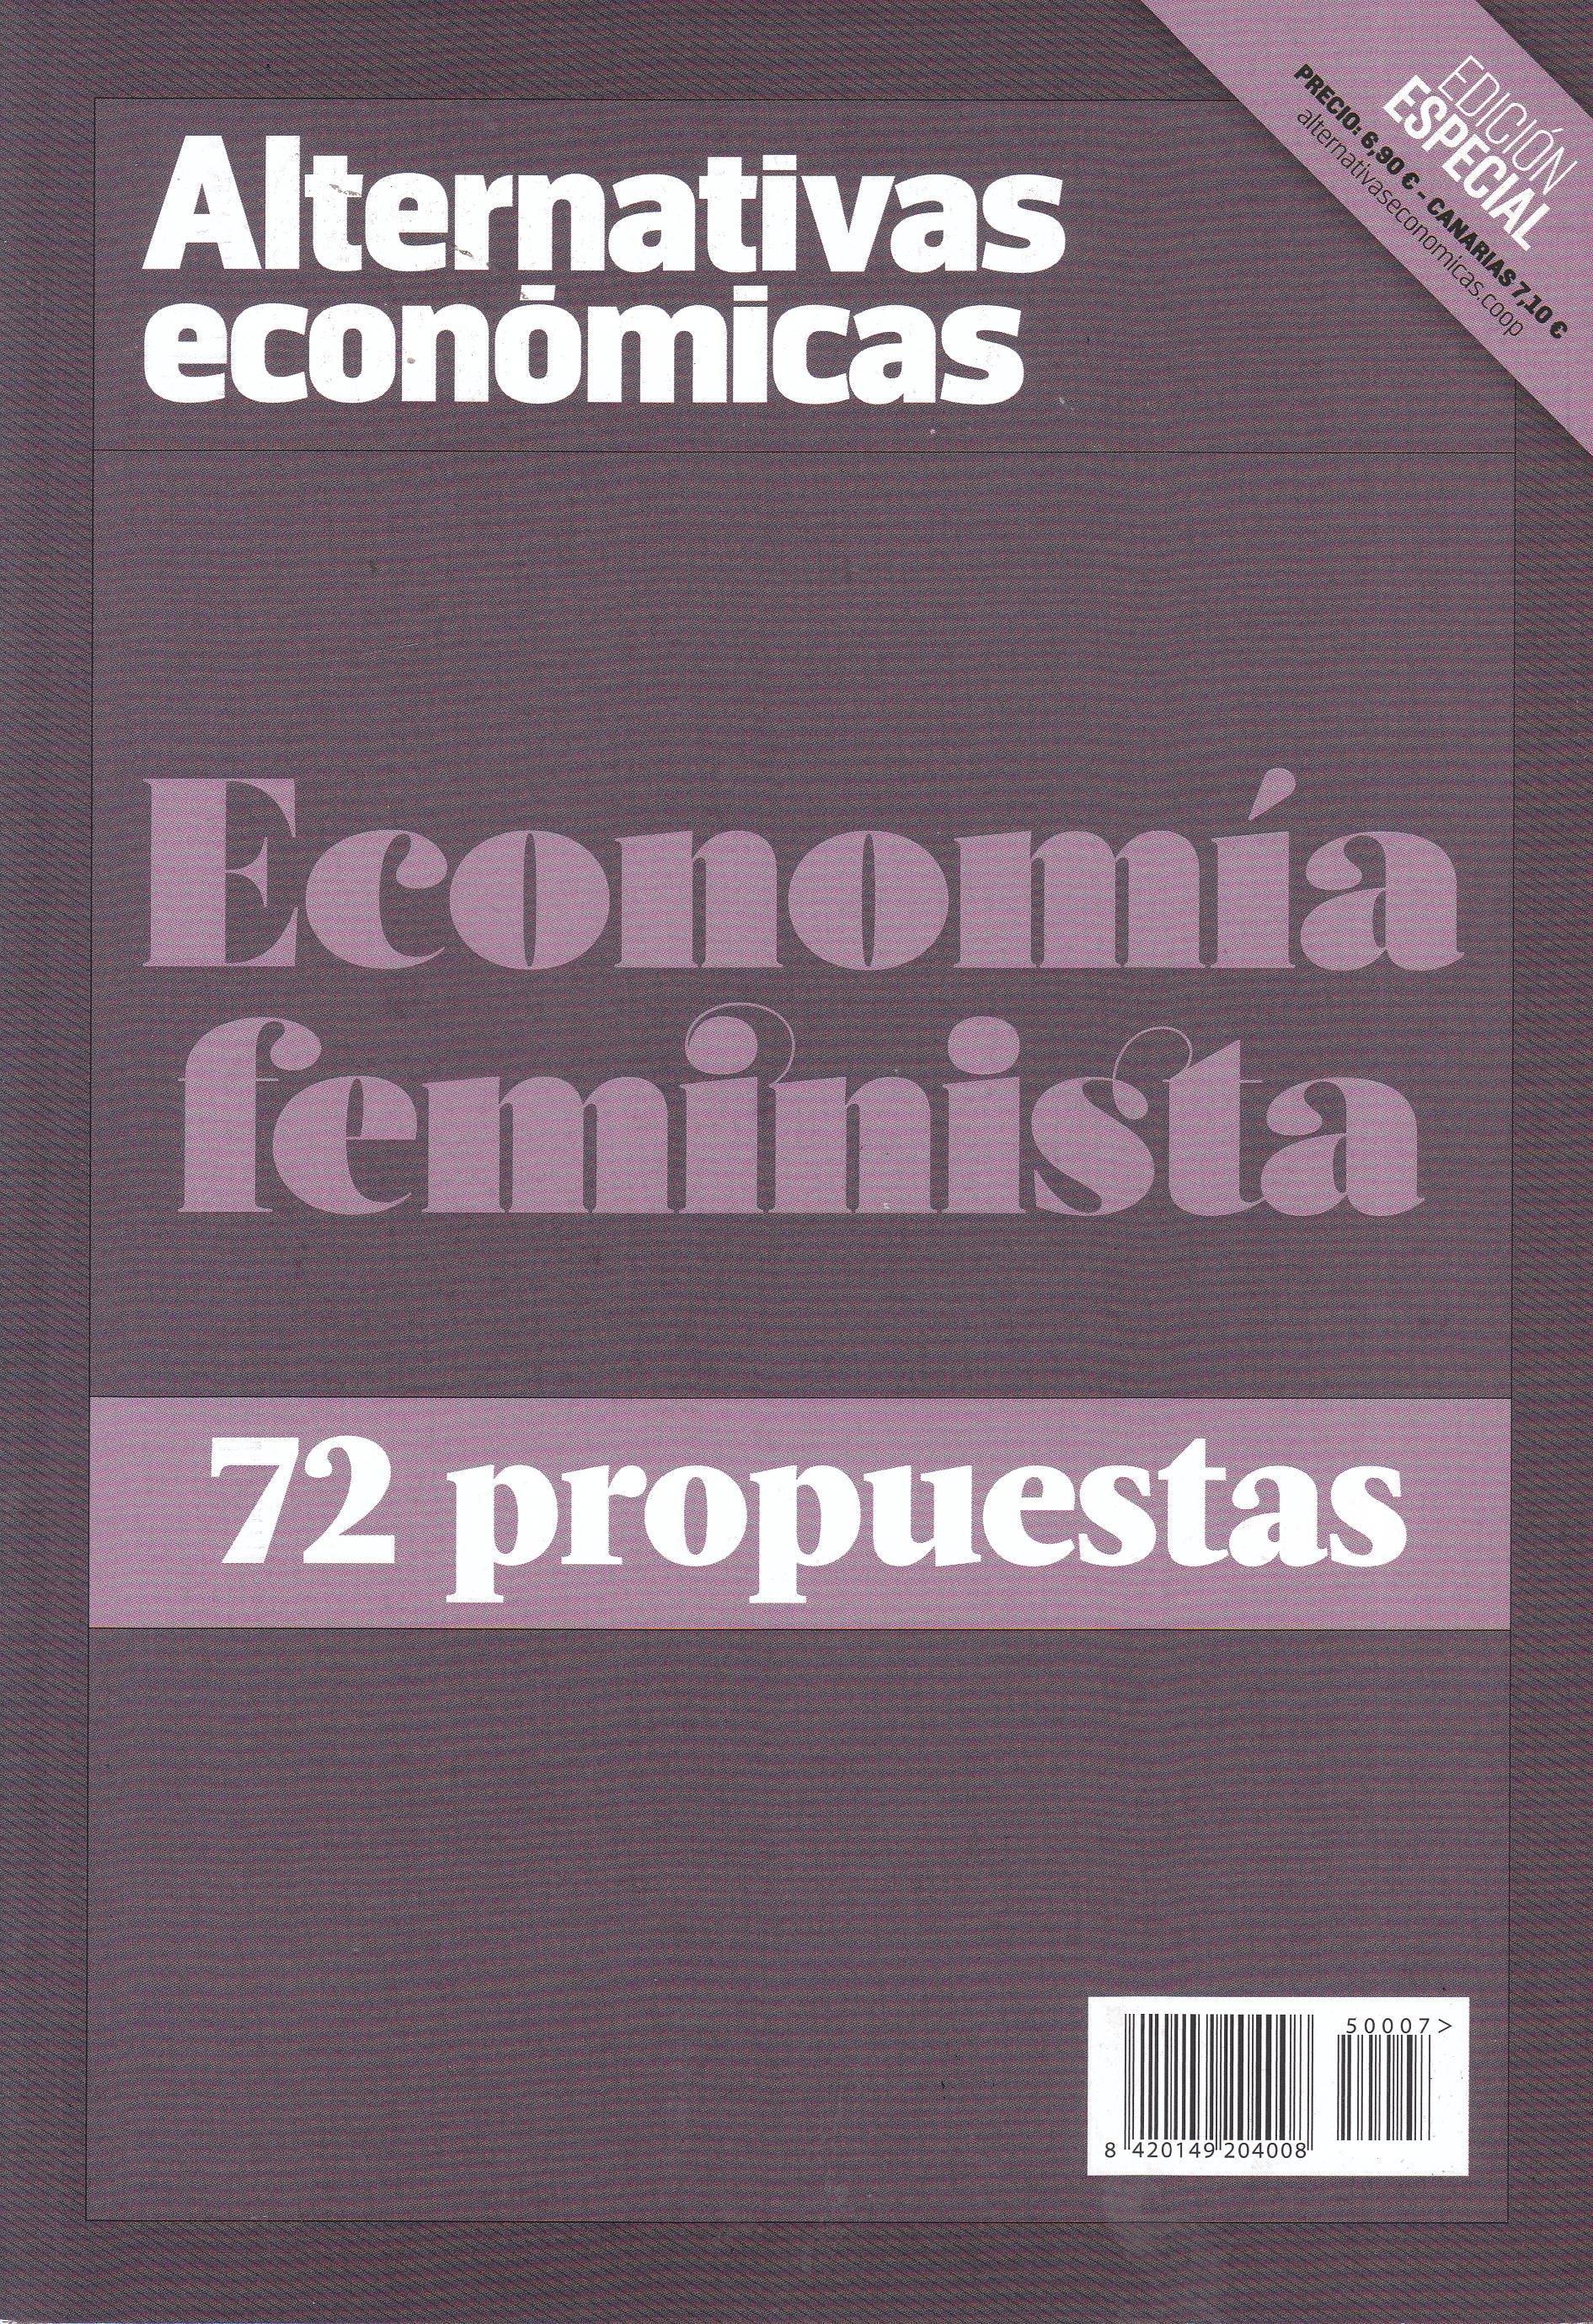 Economía feminista "72 propuestas"